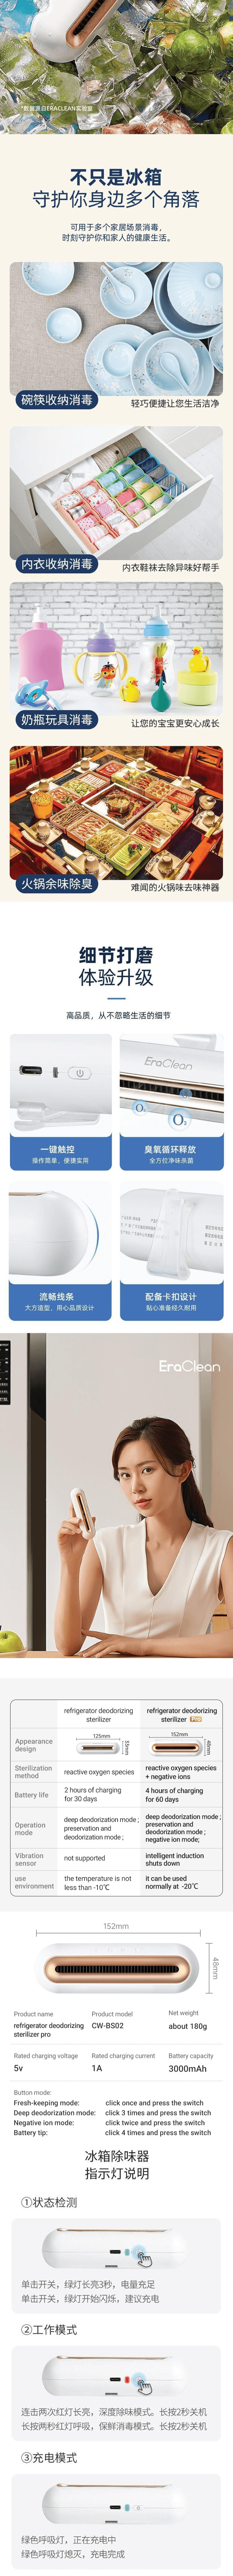 小米生态链 EraClean-世净冰箱除味贴升级版2Pro CW-BS02 白色